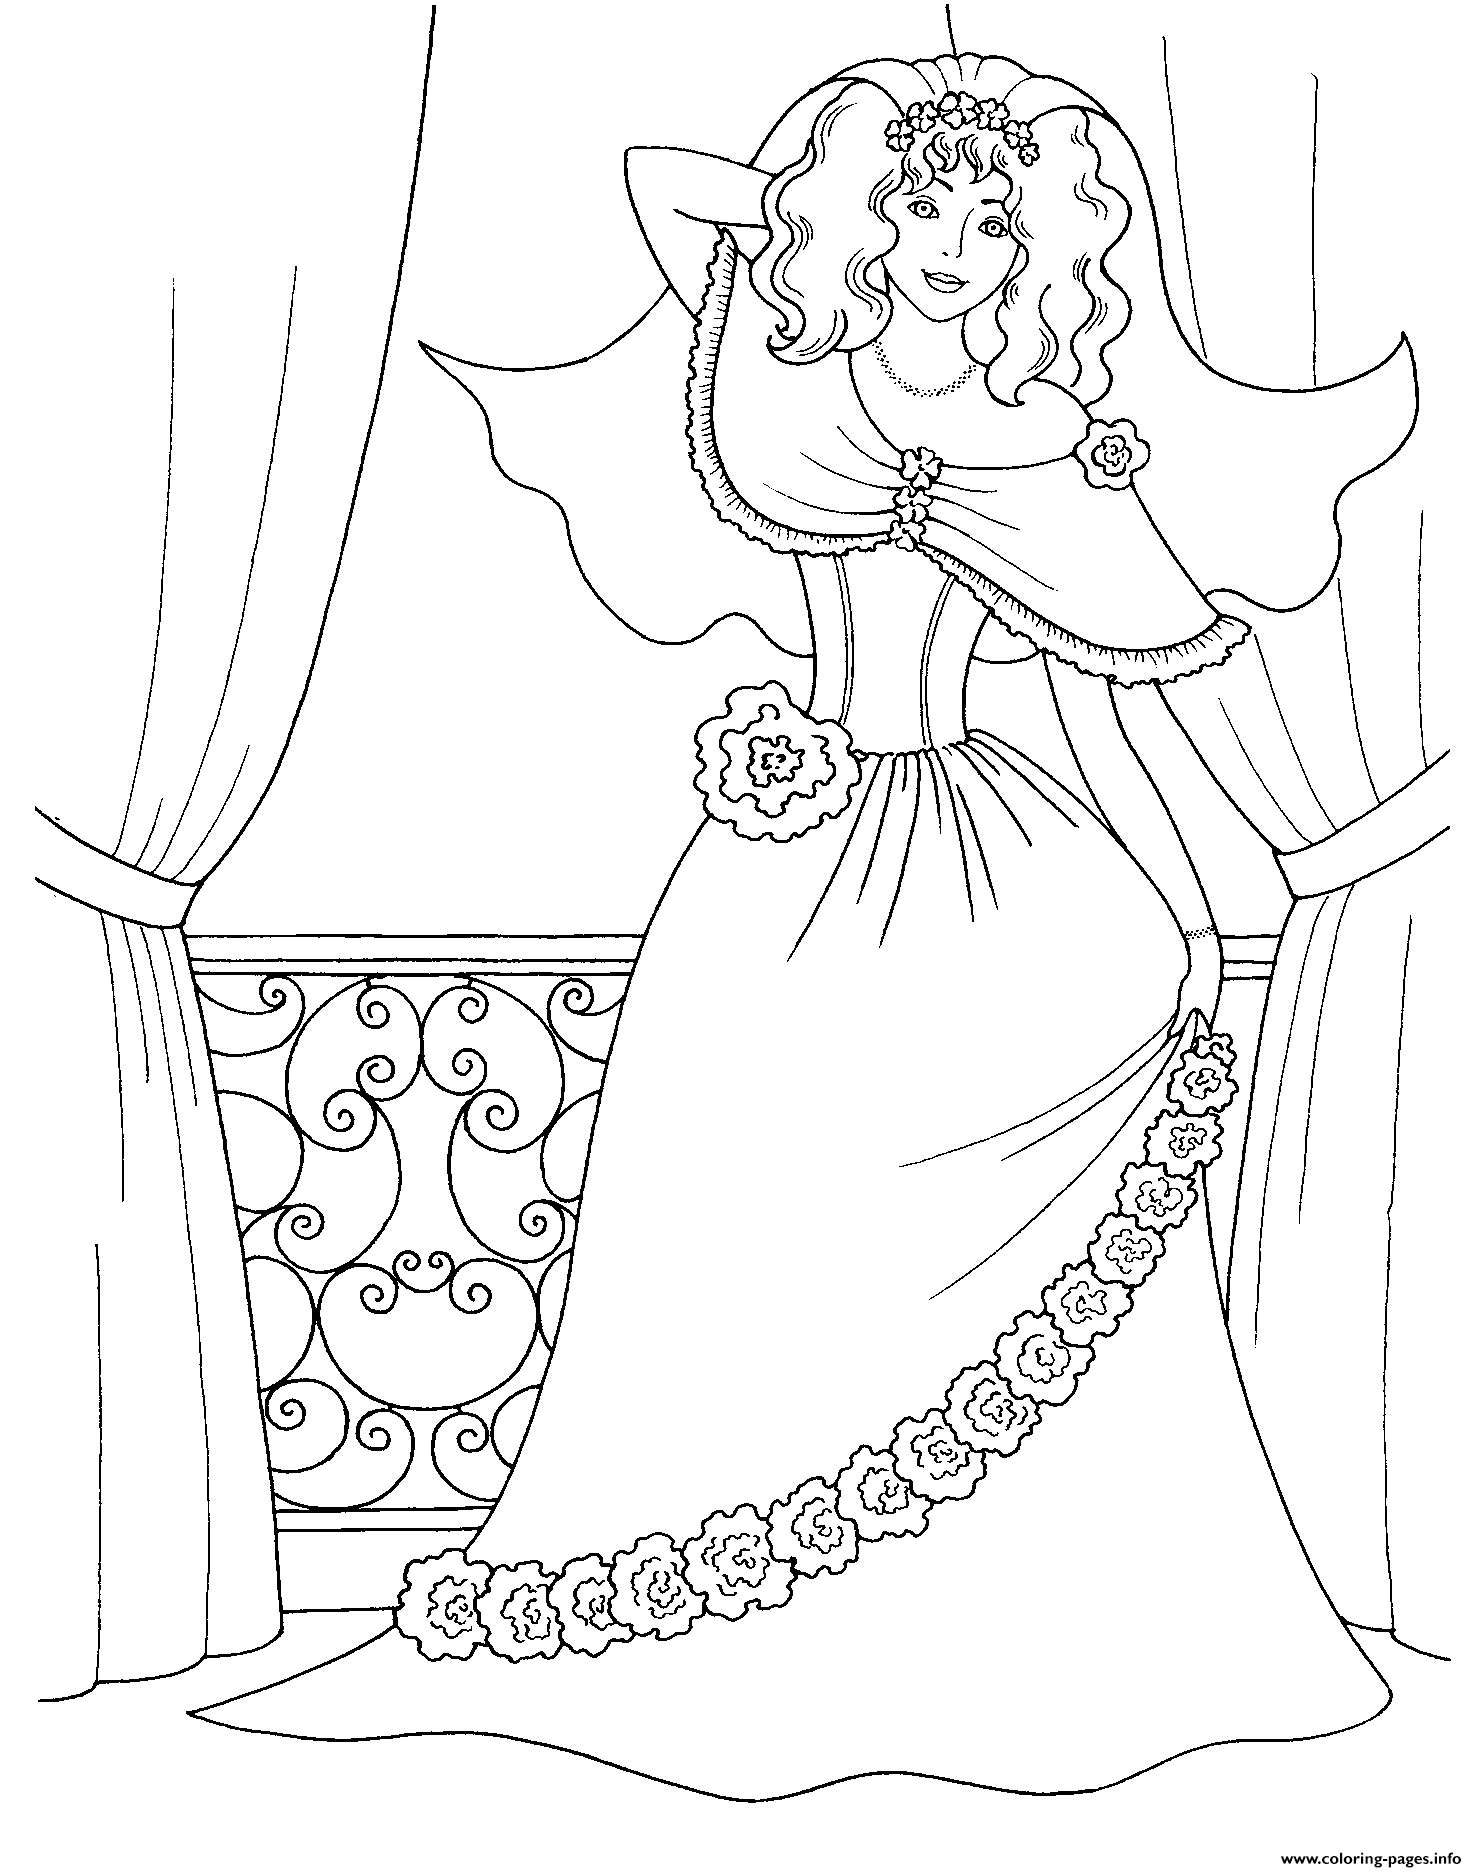 Princess Royal coloring